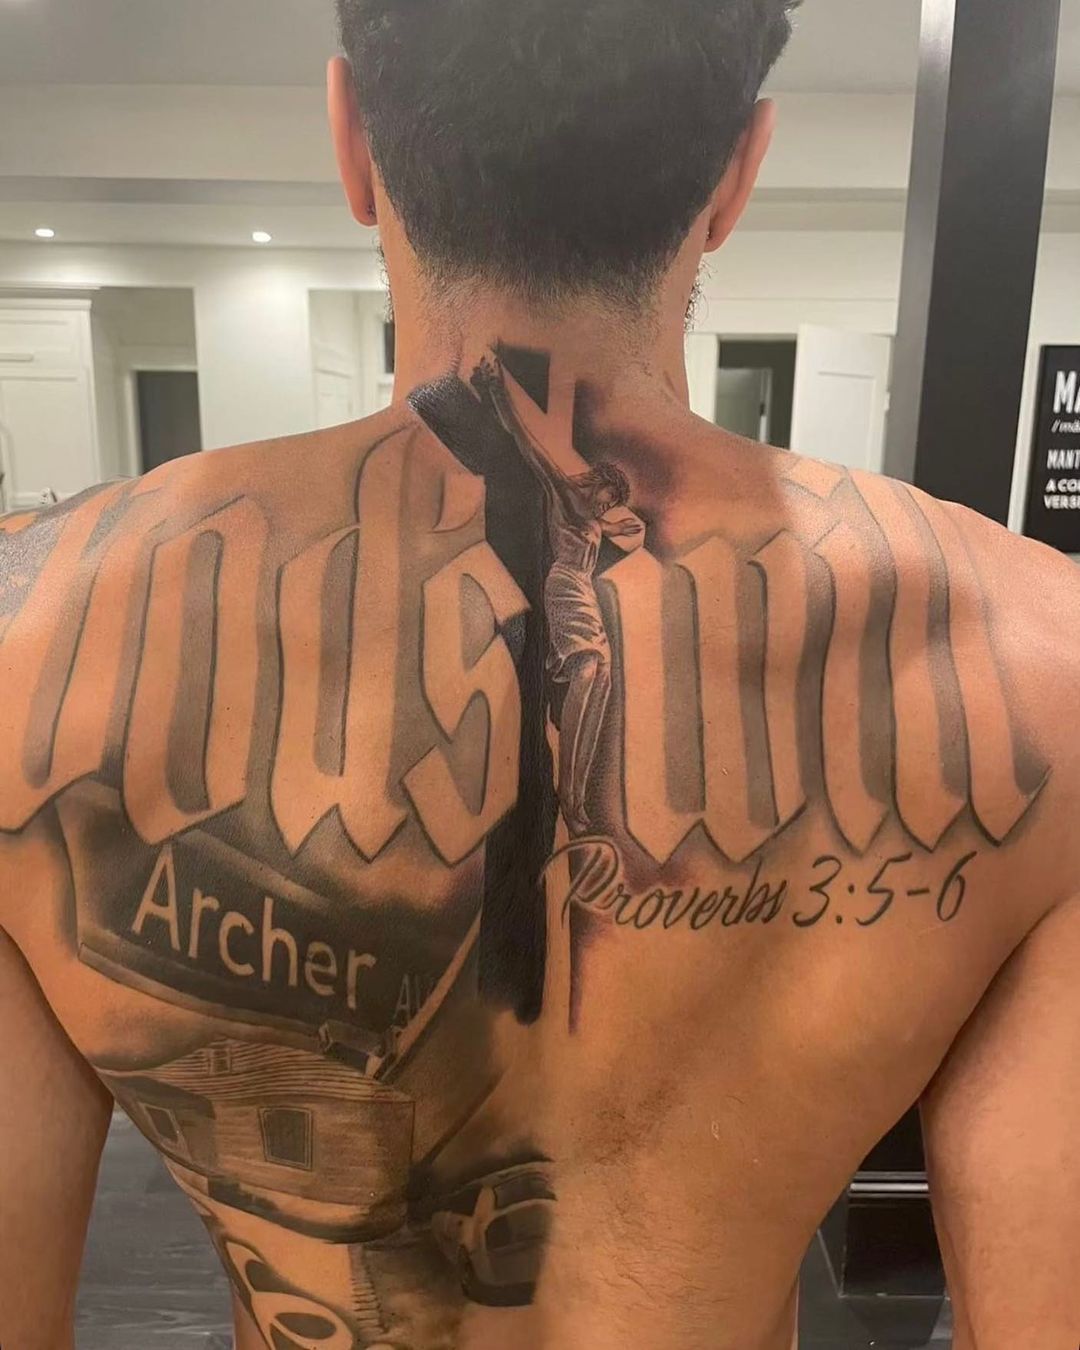 jayson tatum back tattoo fixed